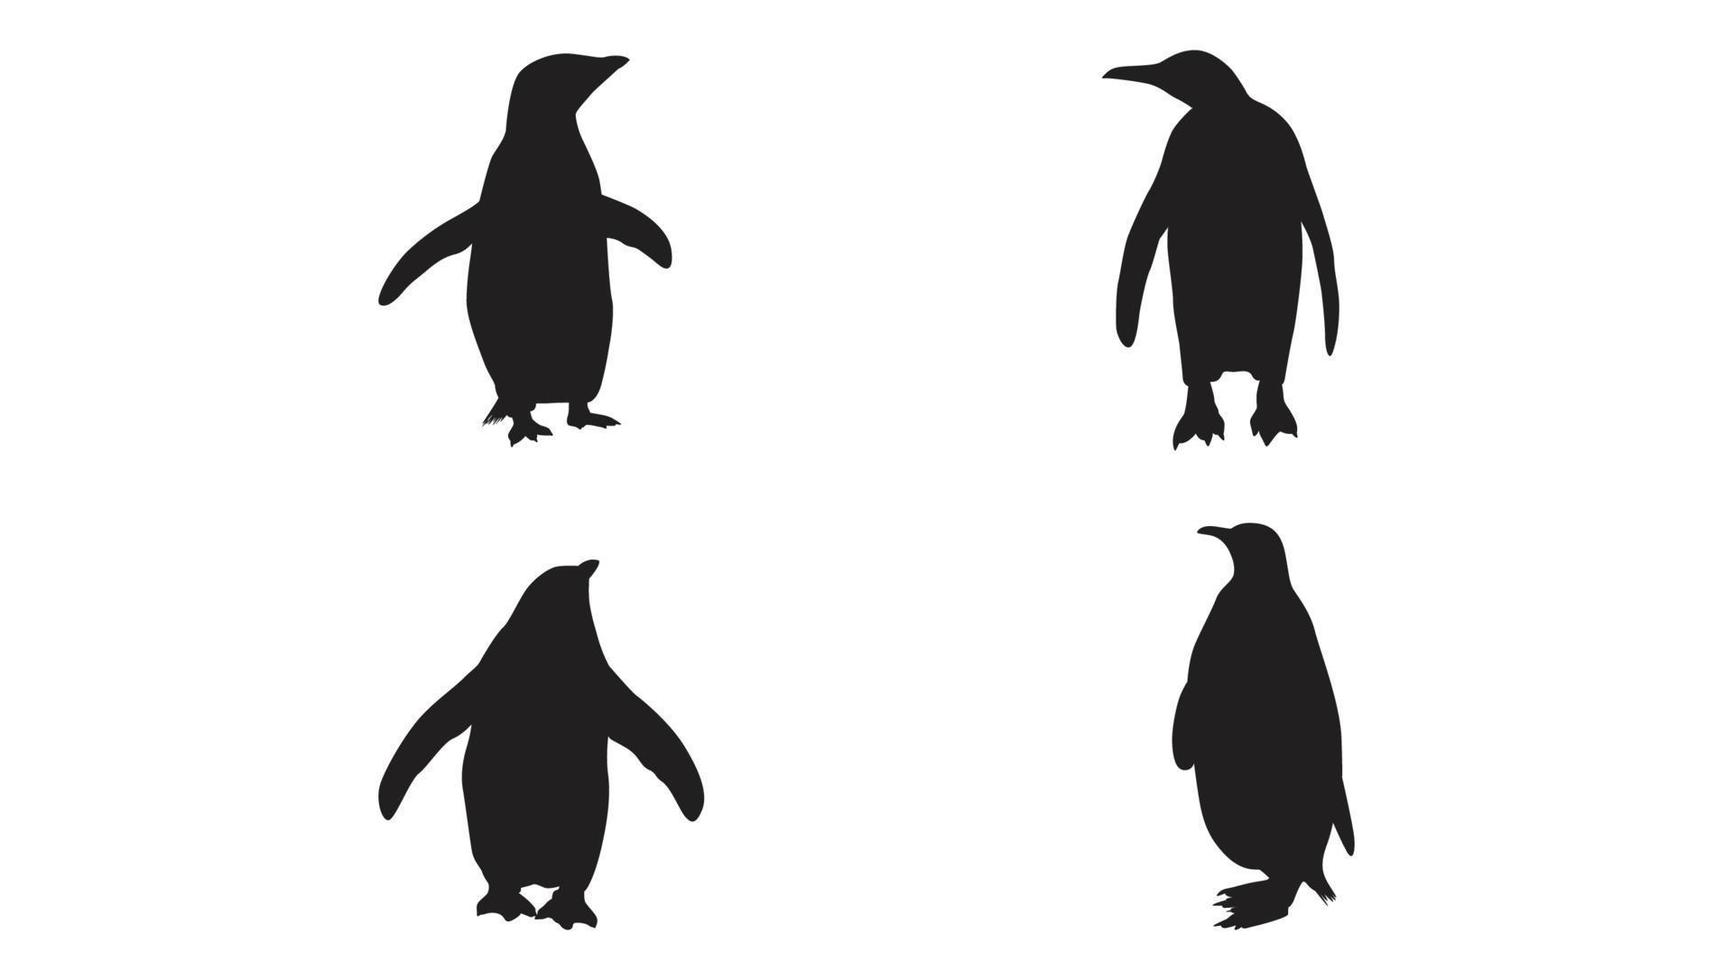 samling av pingvin silhuett i annorlunda poser fri vektor